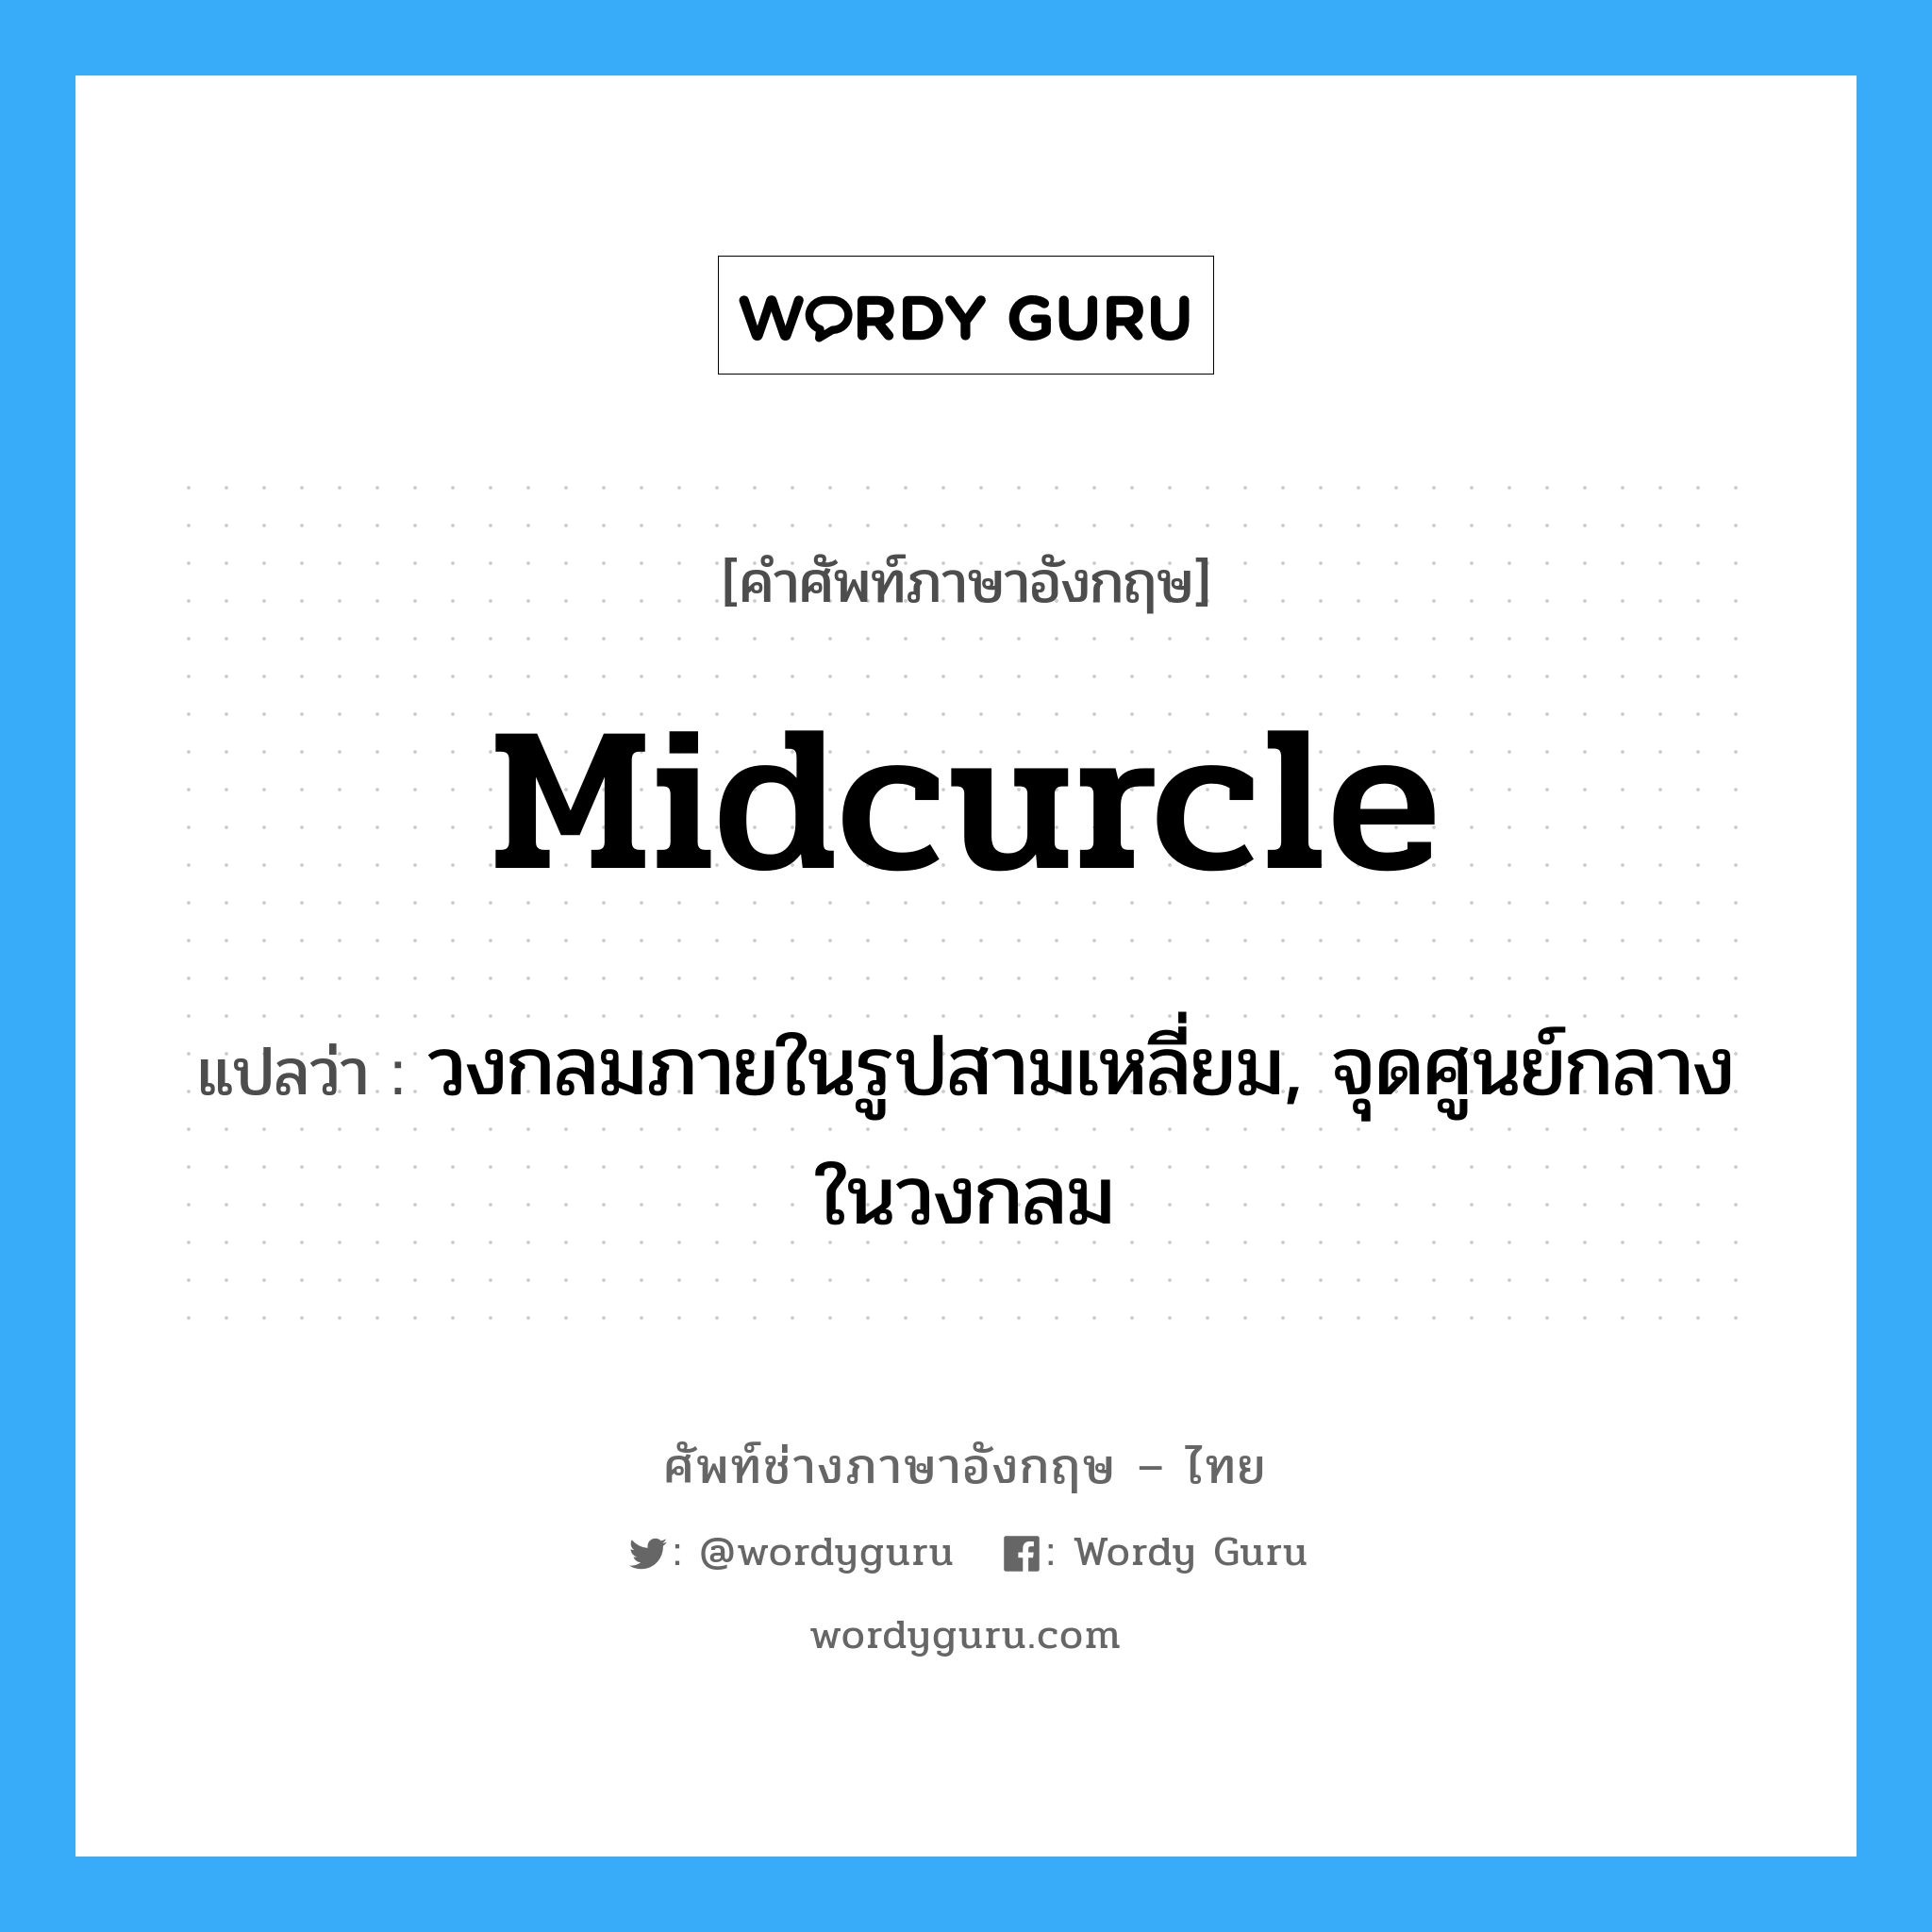 midcurcle แปลว่า?, คำศัพท์ช่างภาษาอังกฤษ - ไทย midcurcle คำศัพท์ภาษาอังกฤษ midcurcle แปลว่า วงกลมภายในรูปสามเหลี่ยม, จุดศูนย์กลางในวงกลม